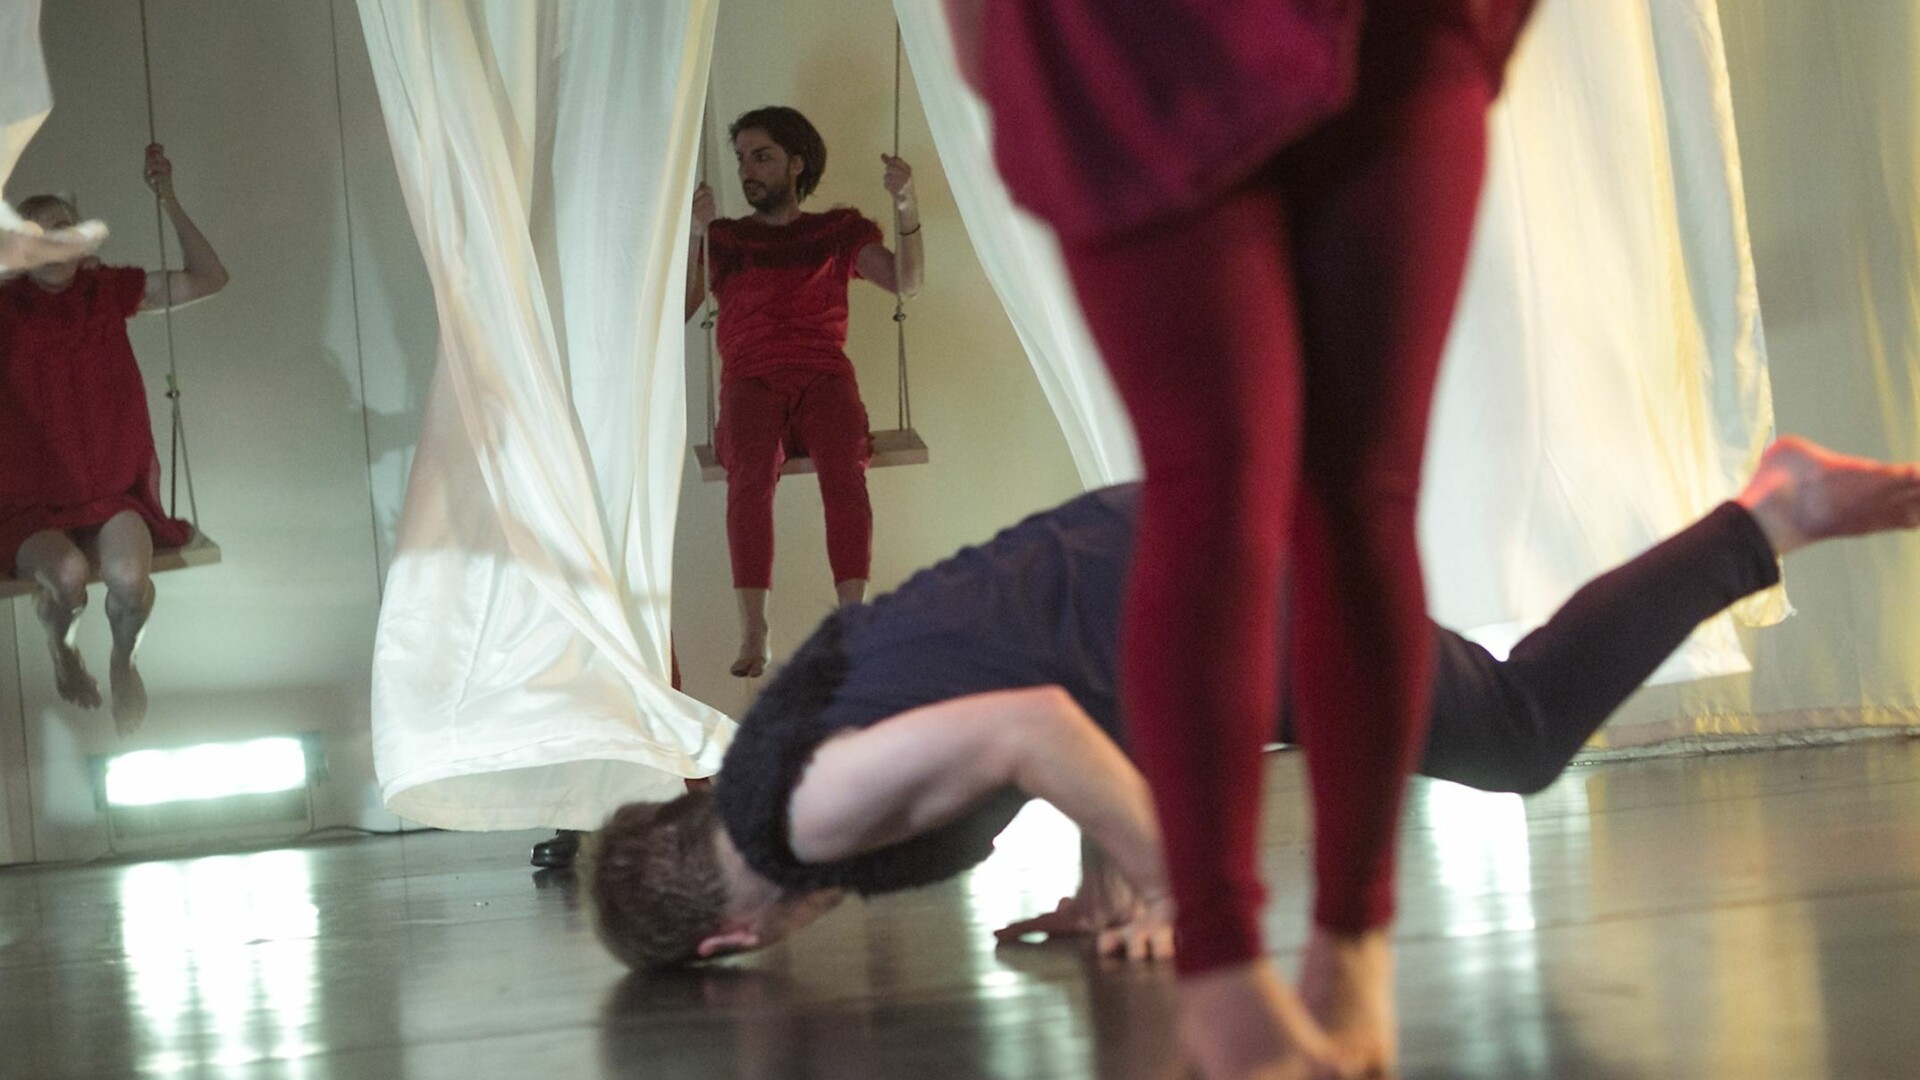 Szenenfoto: Ein Mann dreht sich am Boden, im Vordergrund sind Beine zu sehen, im Hintergrund zwei Menschen auf Schaukeln, die zwischen weißen Vorhaengen schaukeln